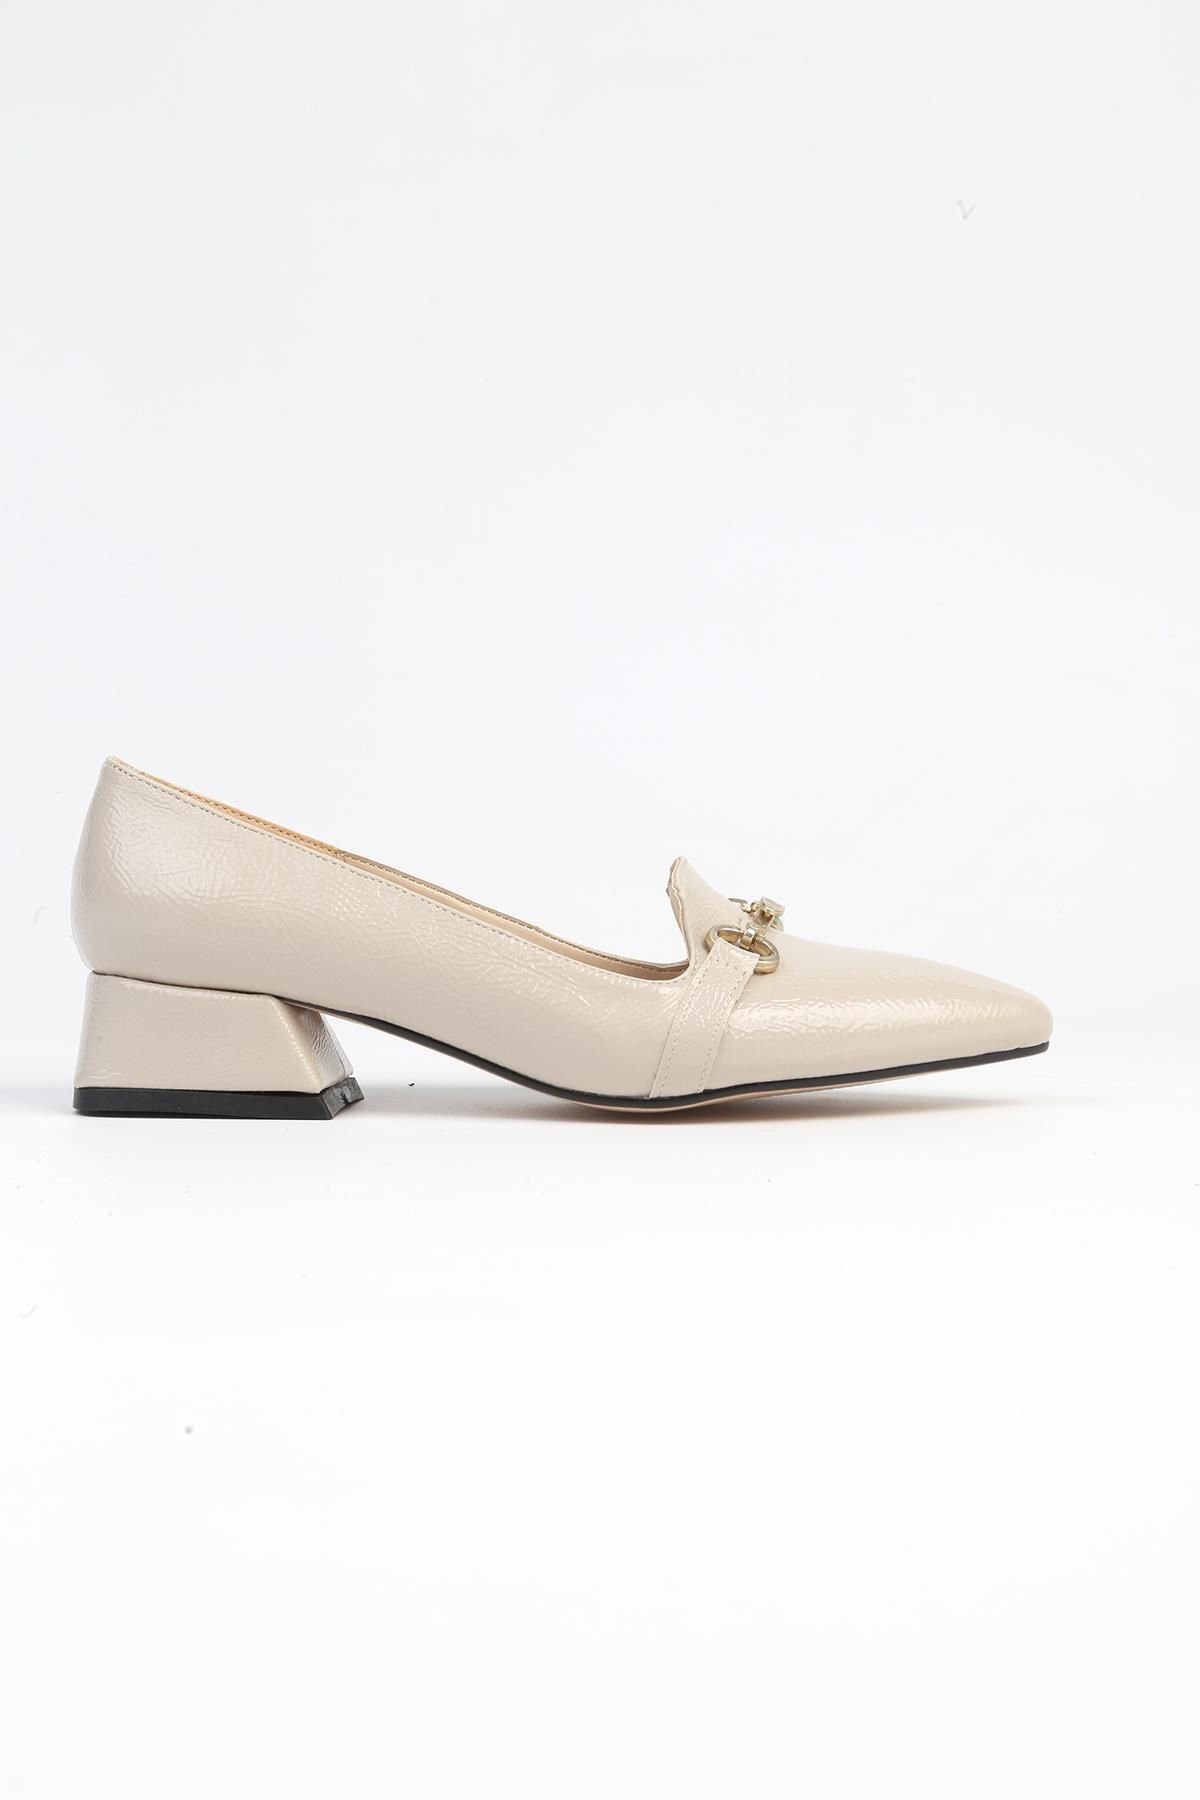 Pierre Cardin ® | PC-52567 - 3478 Bej Kırışık - Kadın Topuklu Ayakkabı